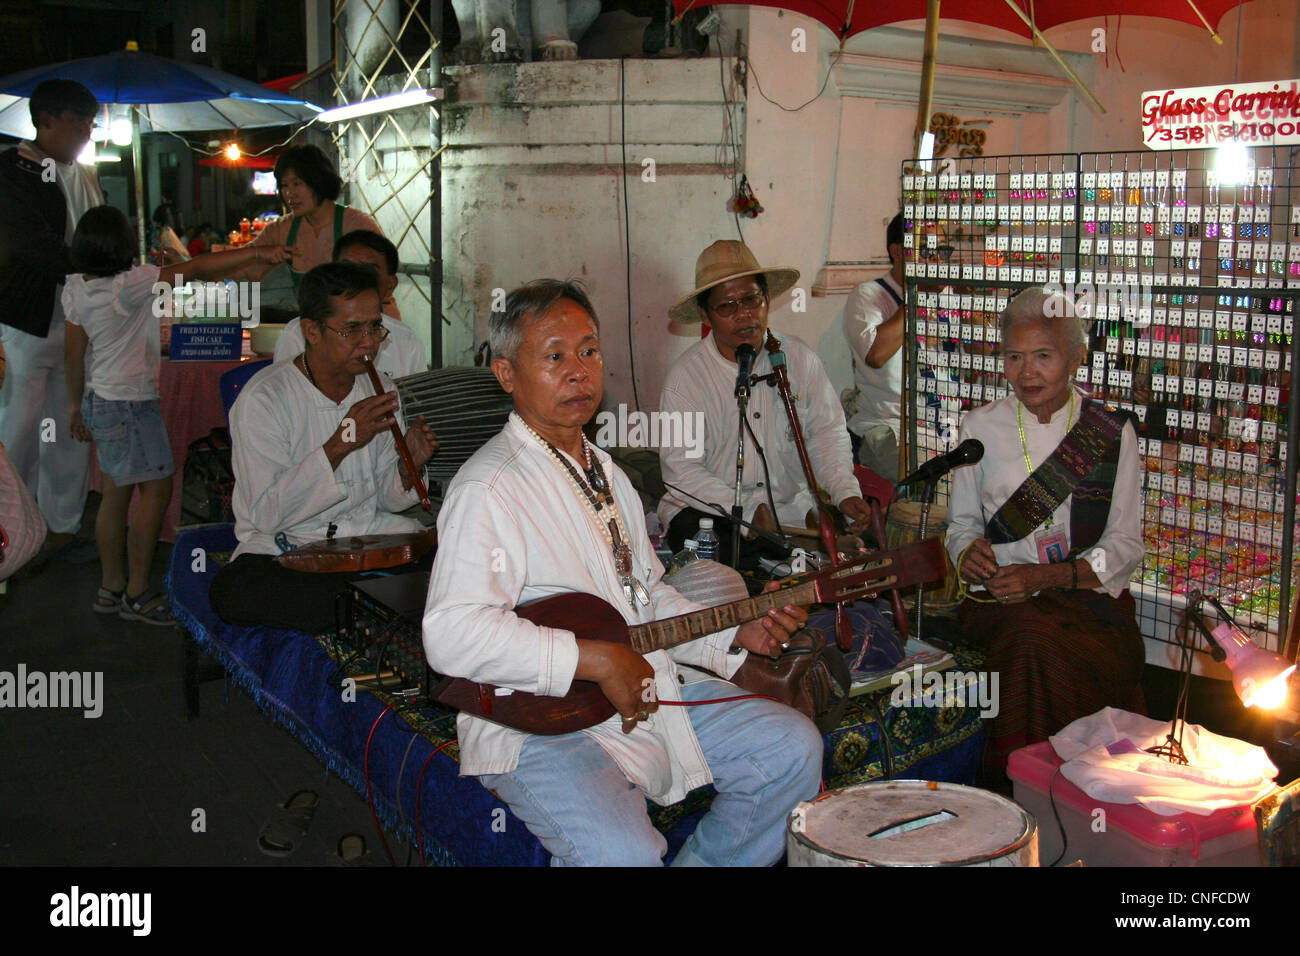 Einheimische Lanna-Musiker spielen traditionelle Instrumente auf der People Walk Street, tanon rachdumnean, Chiang Mai, Thaialnd Stockfoto